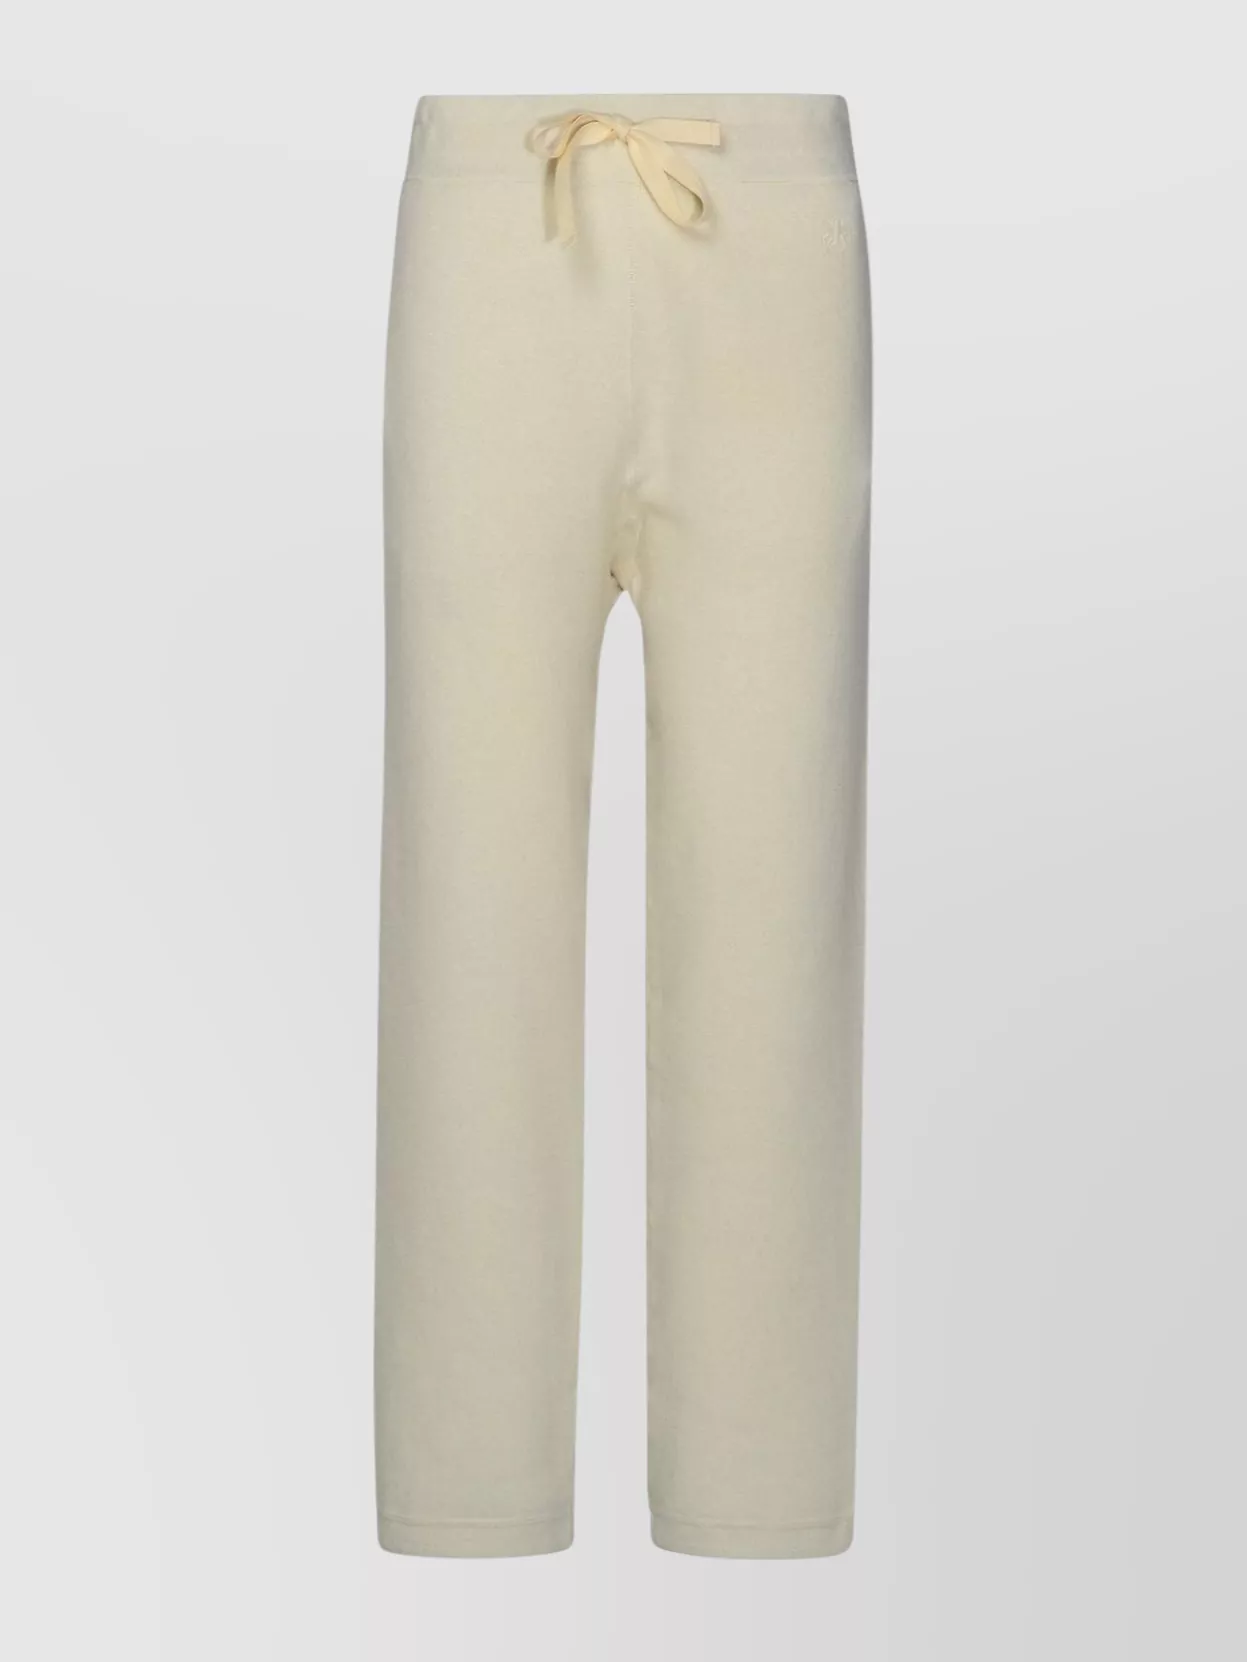 Shop Jil Sander Cashmere Sporty Pants Featuring Pockets